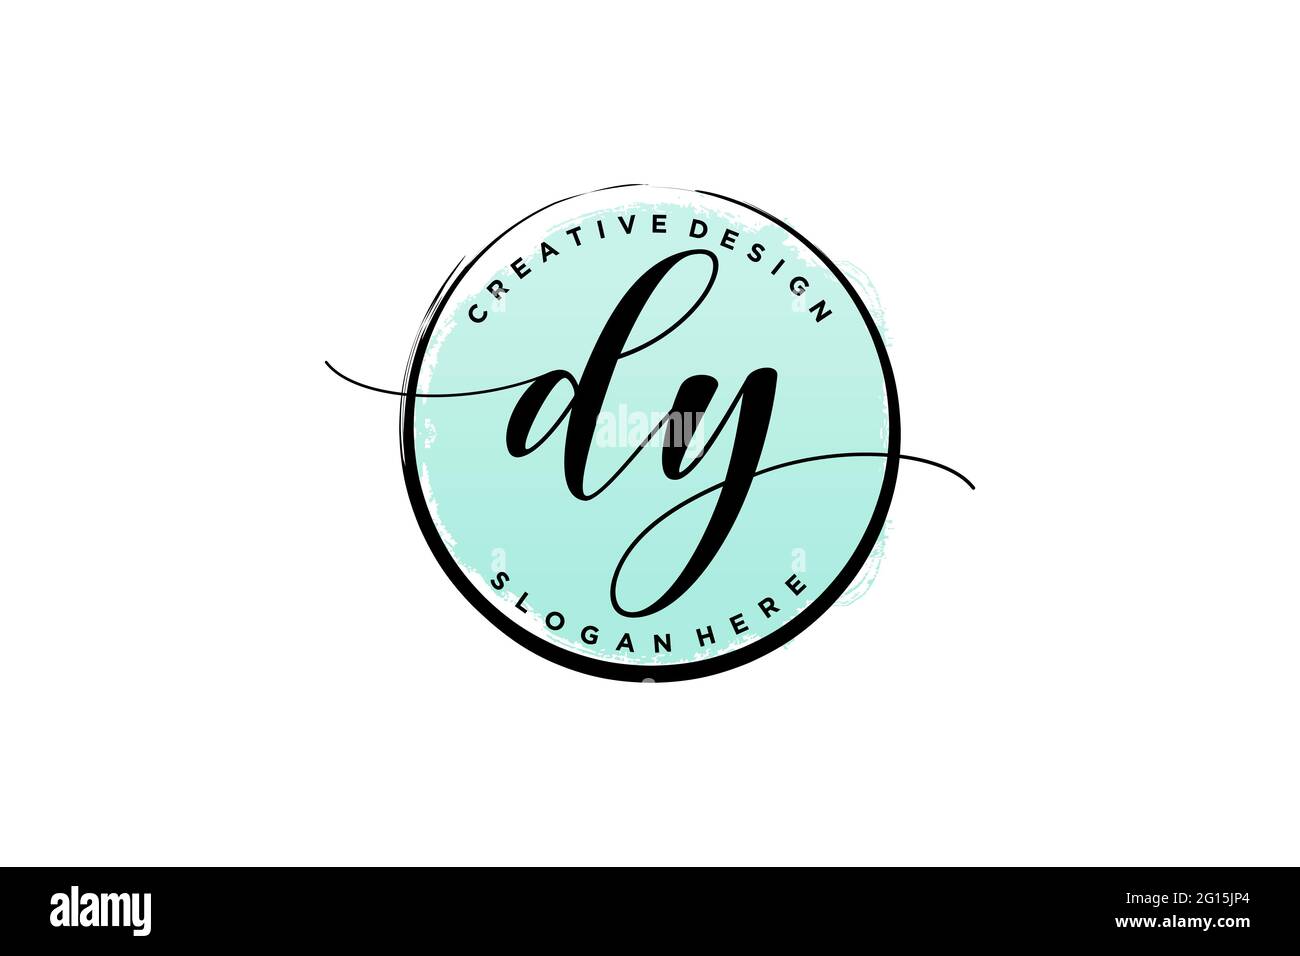 DY Handschrift Logo mit Kreis Vorlage Vektor Signatur, Hochzeit, Mode, Blumen und botanische mit kreativen Vorlage. Stock Vektor